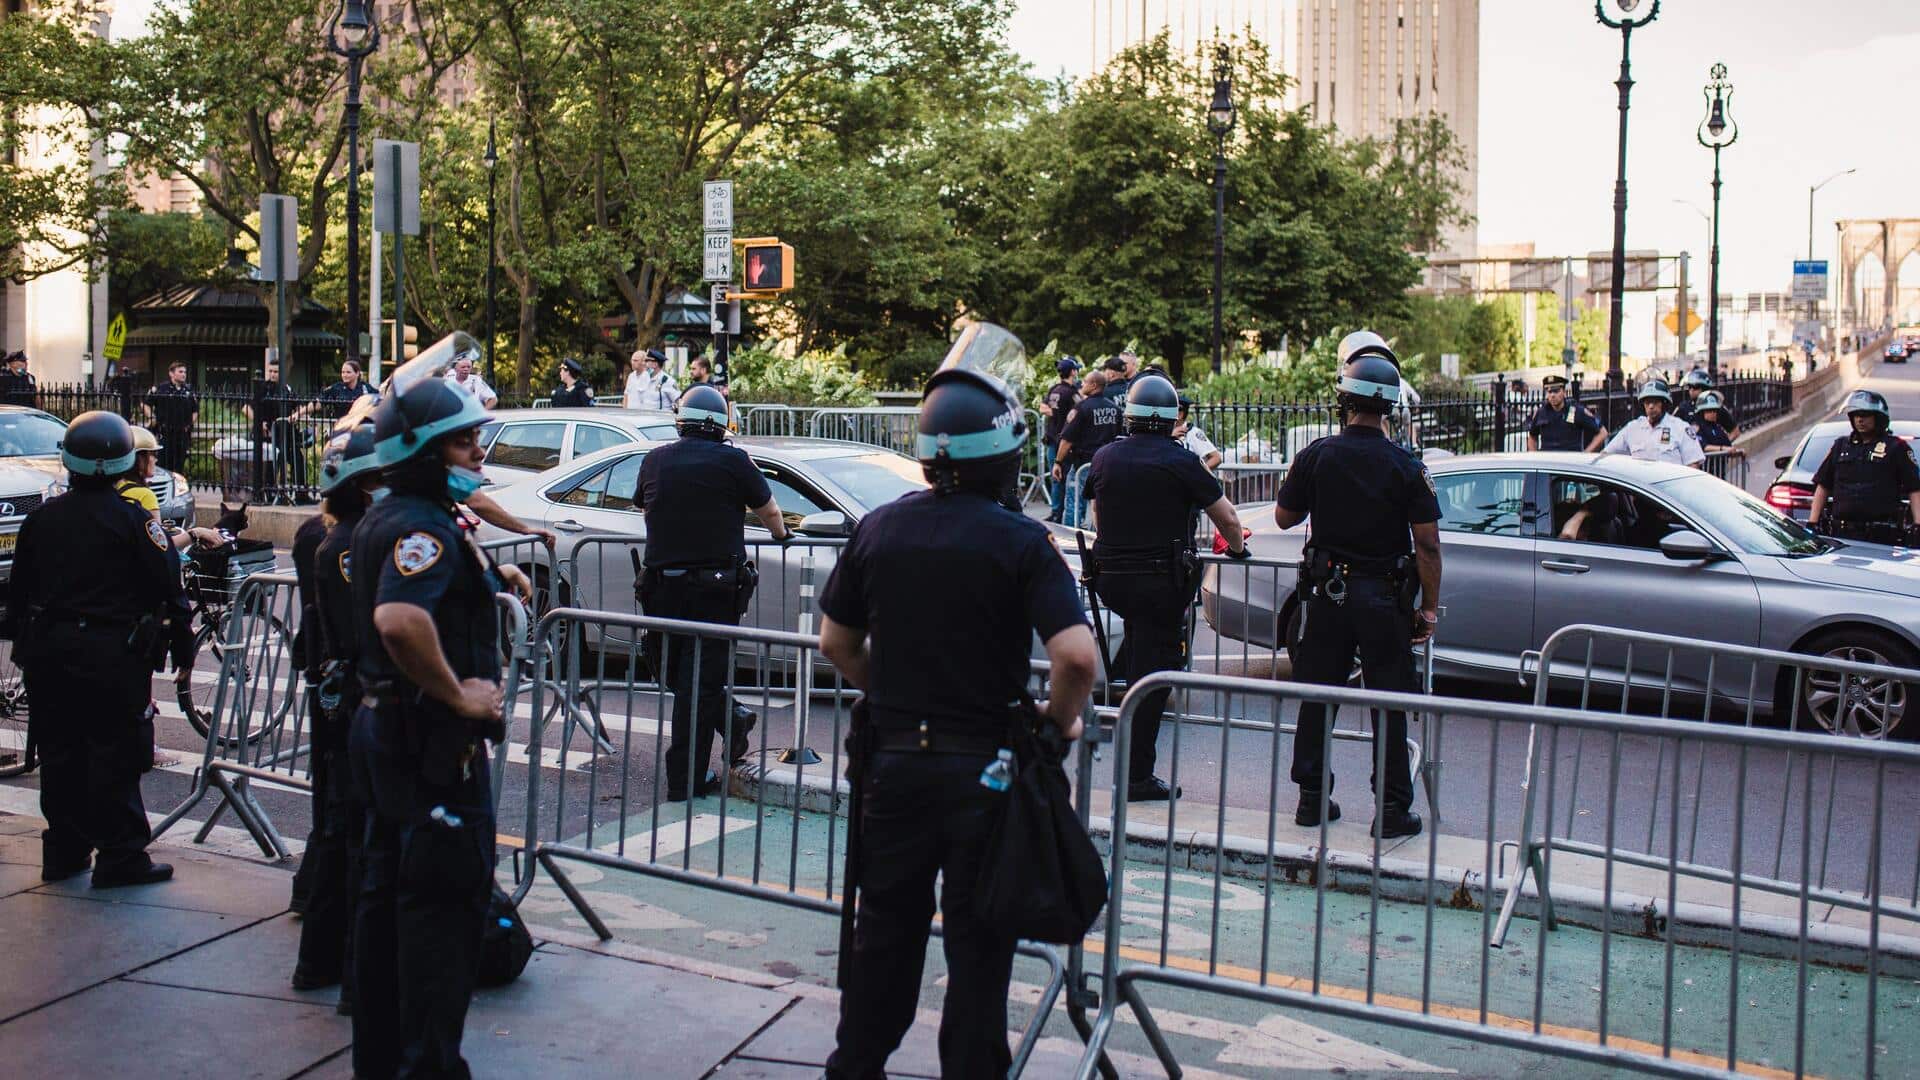 अमेरिका: न्यूयॉर्क में यहूदी धर्मस्थल के बाहर गोलीबारी, 'फिलिस्तीन को आजाद करो' के नारे लगाए